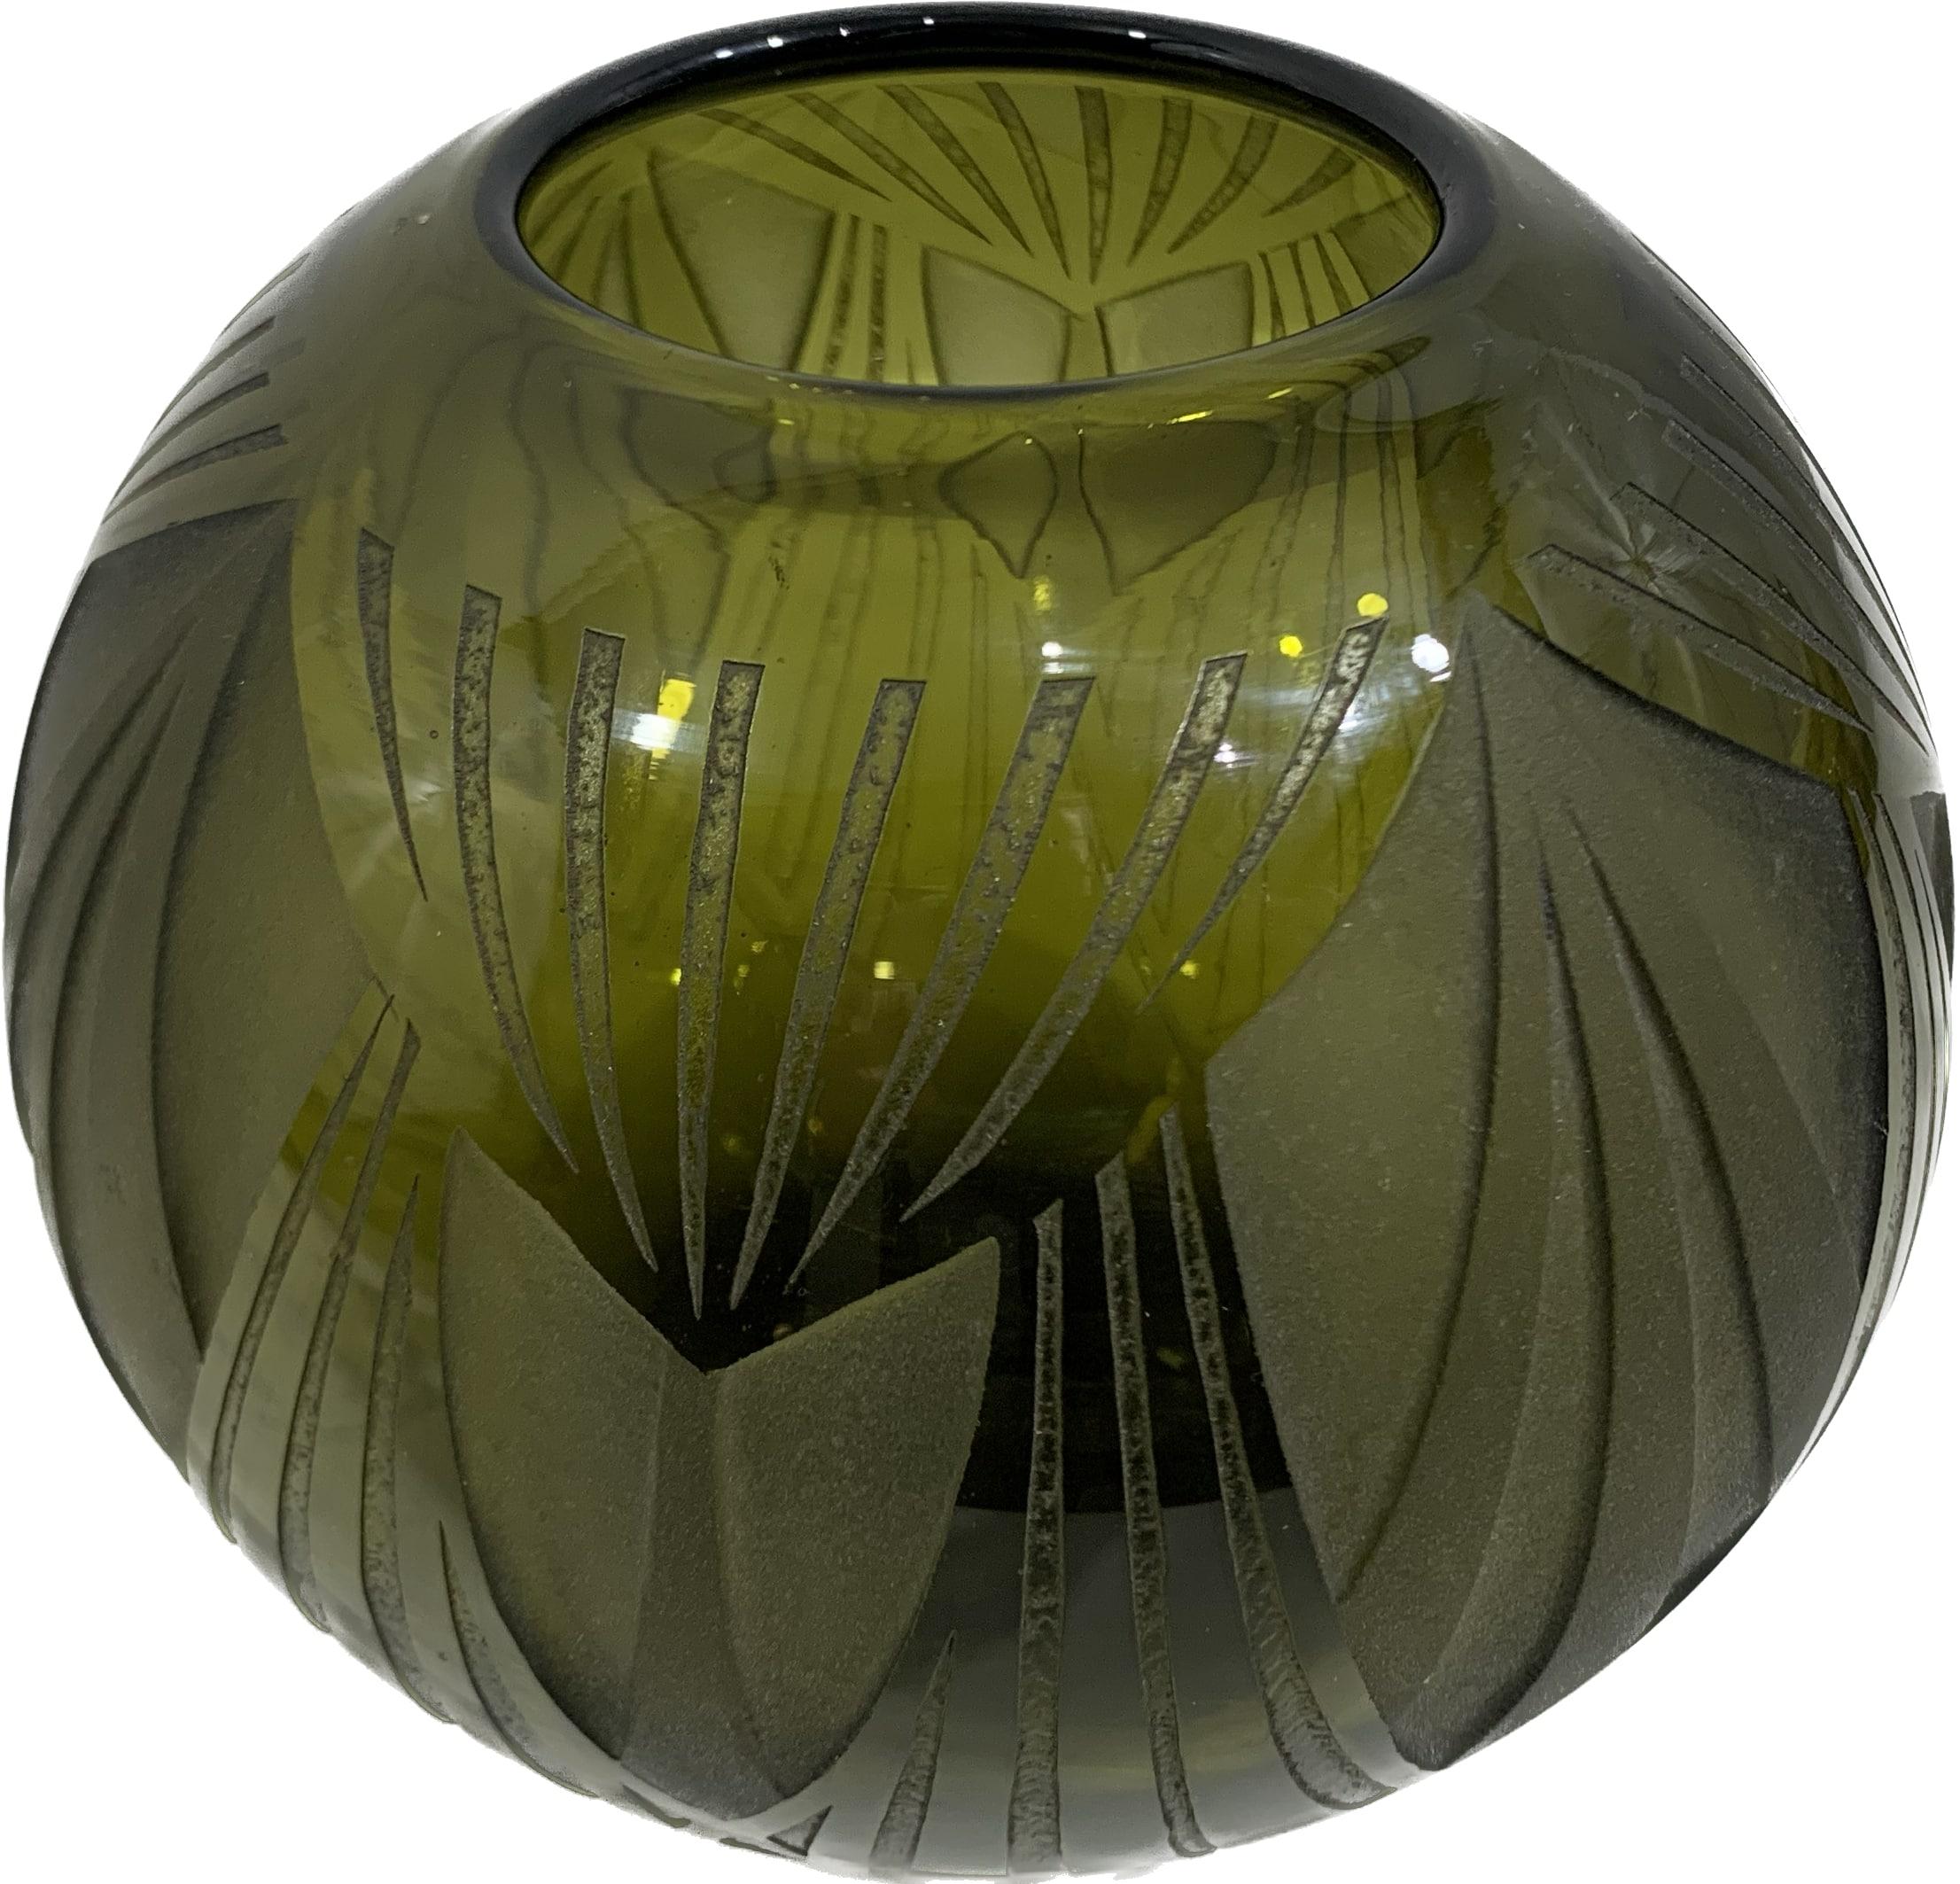 Un superbe vase en verre du milieu du 20ème siècle signé L Gras. Il est d'origine française et date des années 1930. Le vase est poli à blanc et sablé, mettant ainsi en valeur une figure géométrique typique du mouvement Art-Déco. Le décapage a